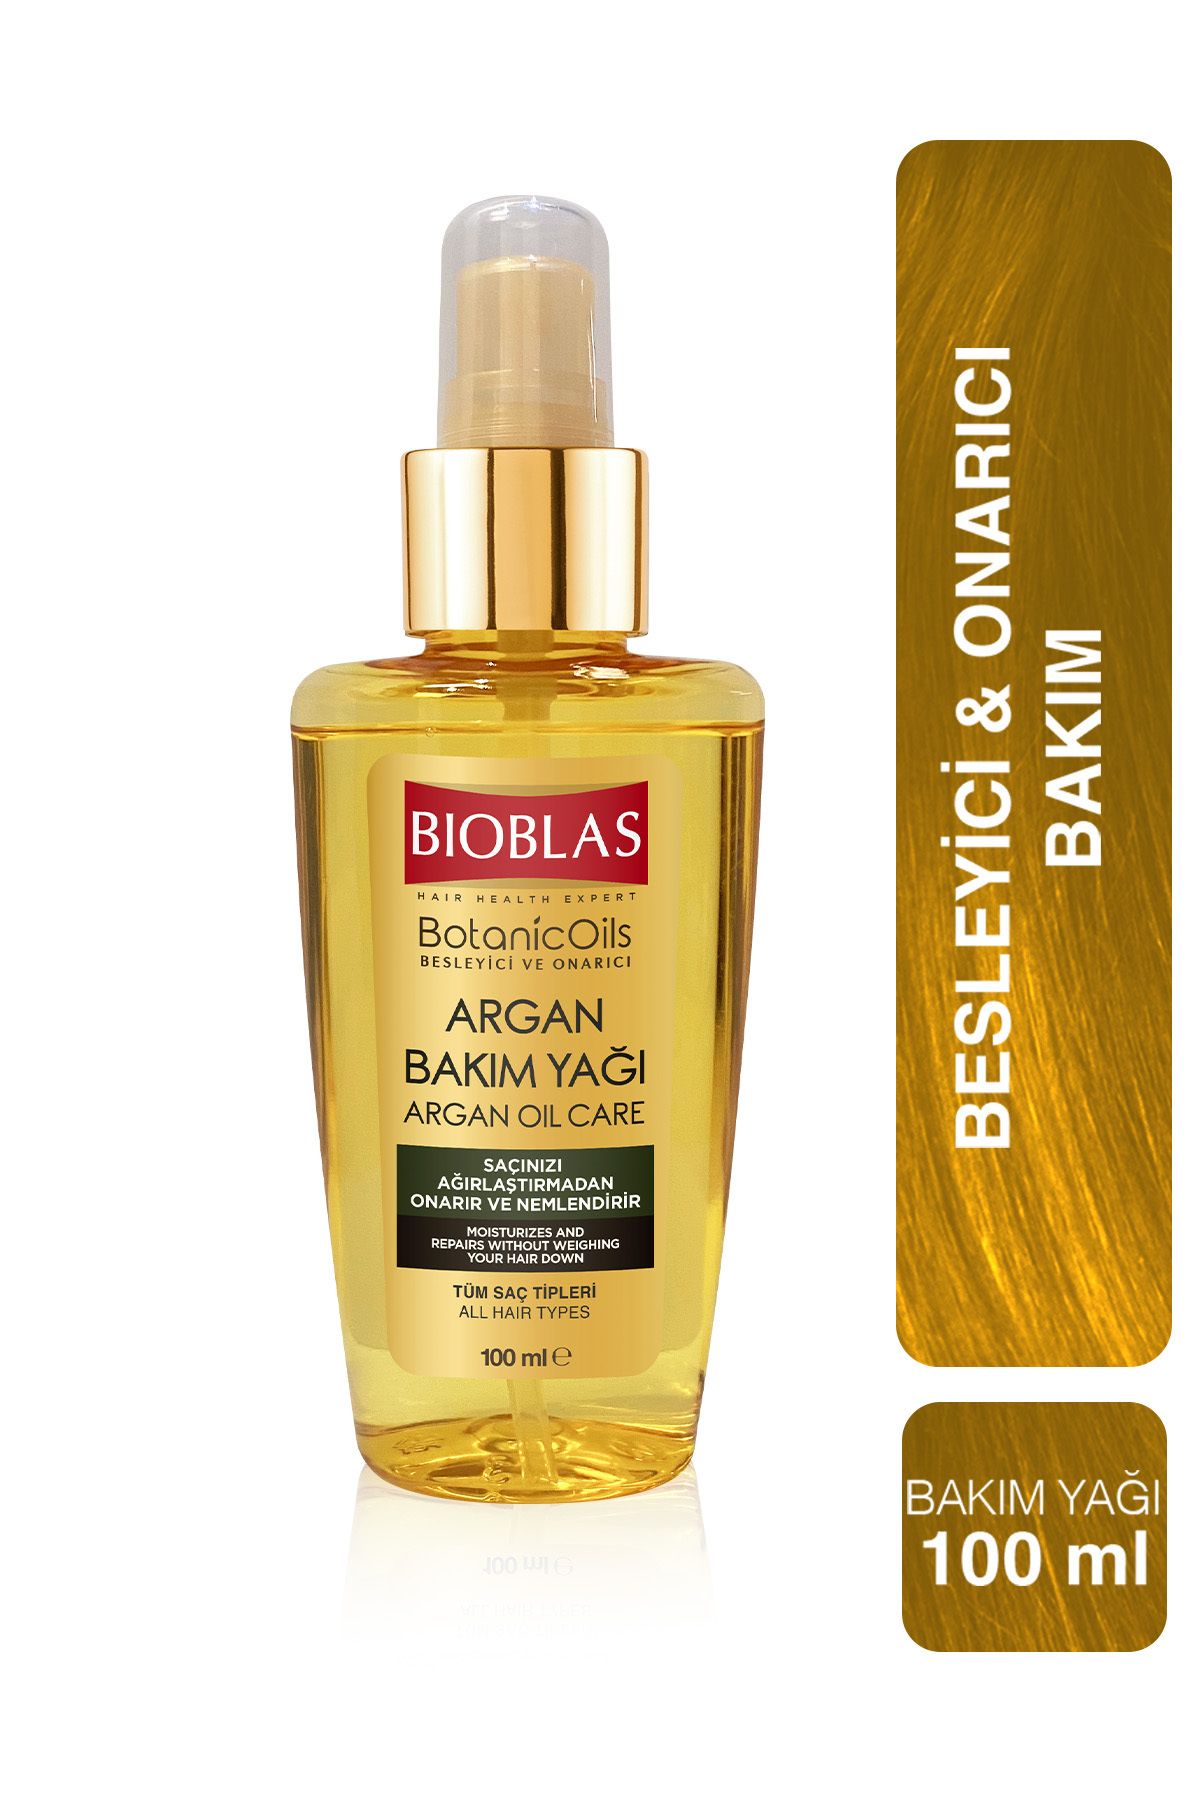 Bioblas Bıoblas Botanıc Oıls Argan Saç Bakım Yağı 100 ml